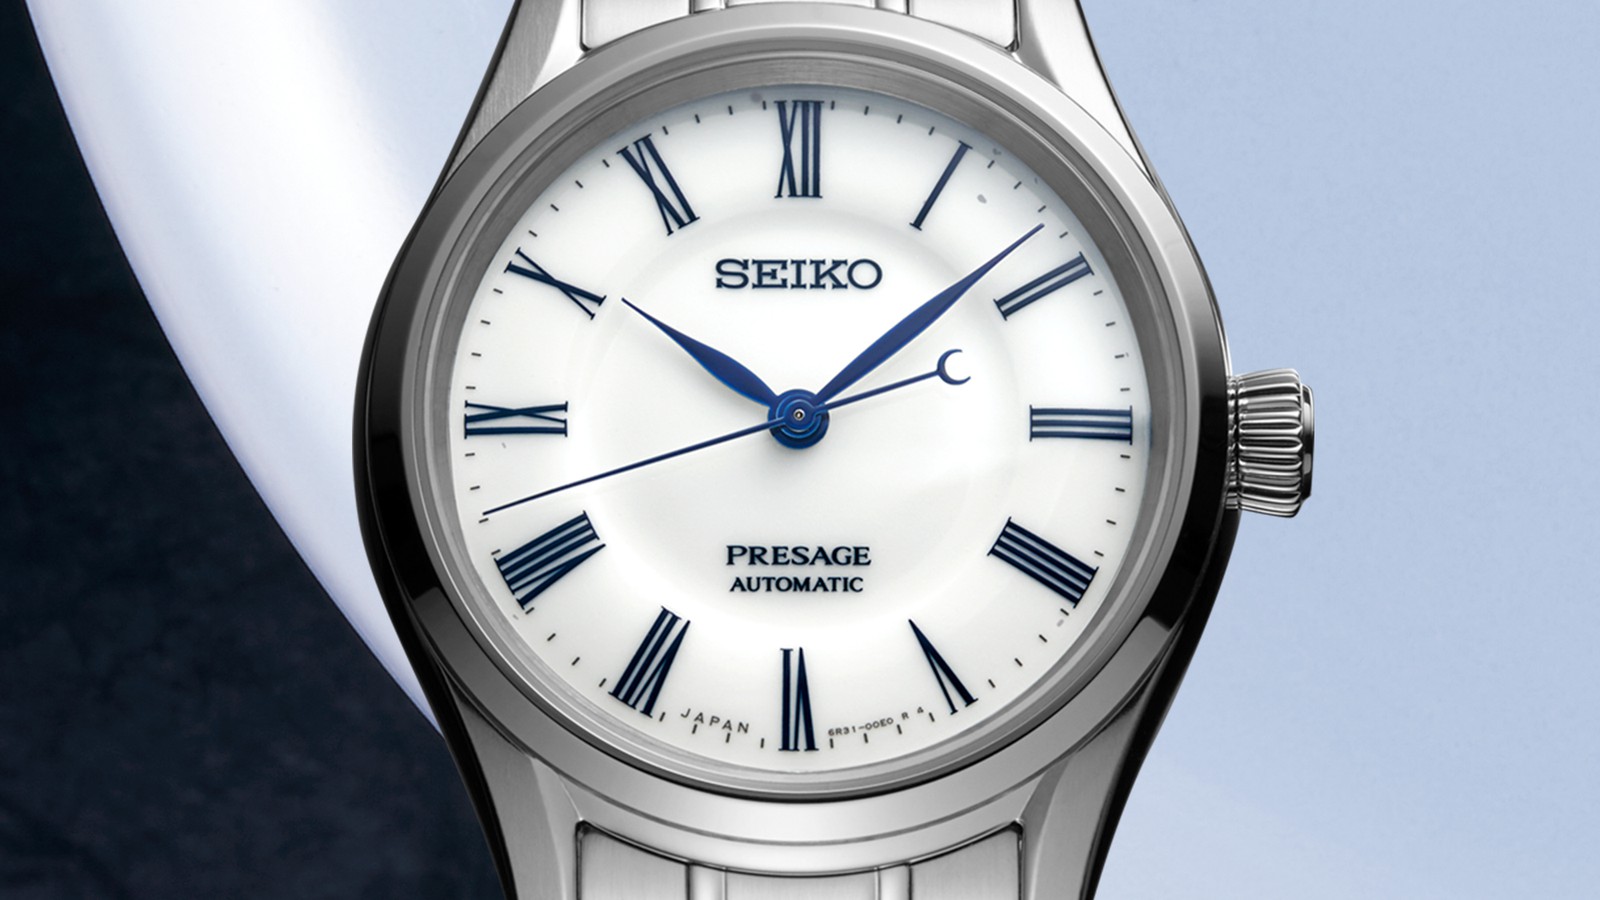 SEIKO[セイコー] PRESAGE[プレザージュ] コアショップモデル Prestige 